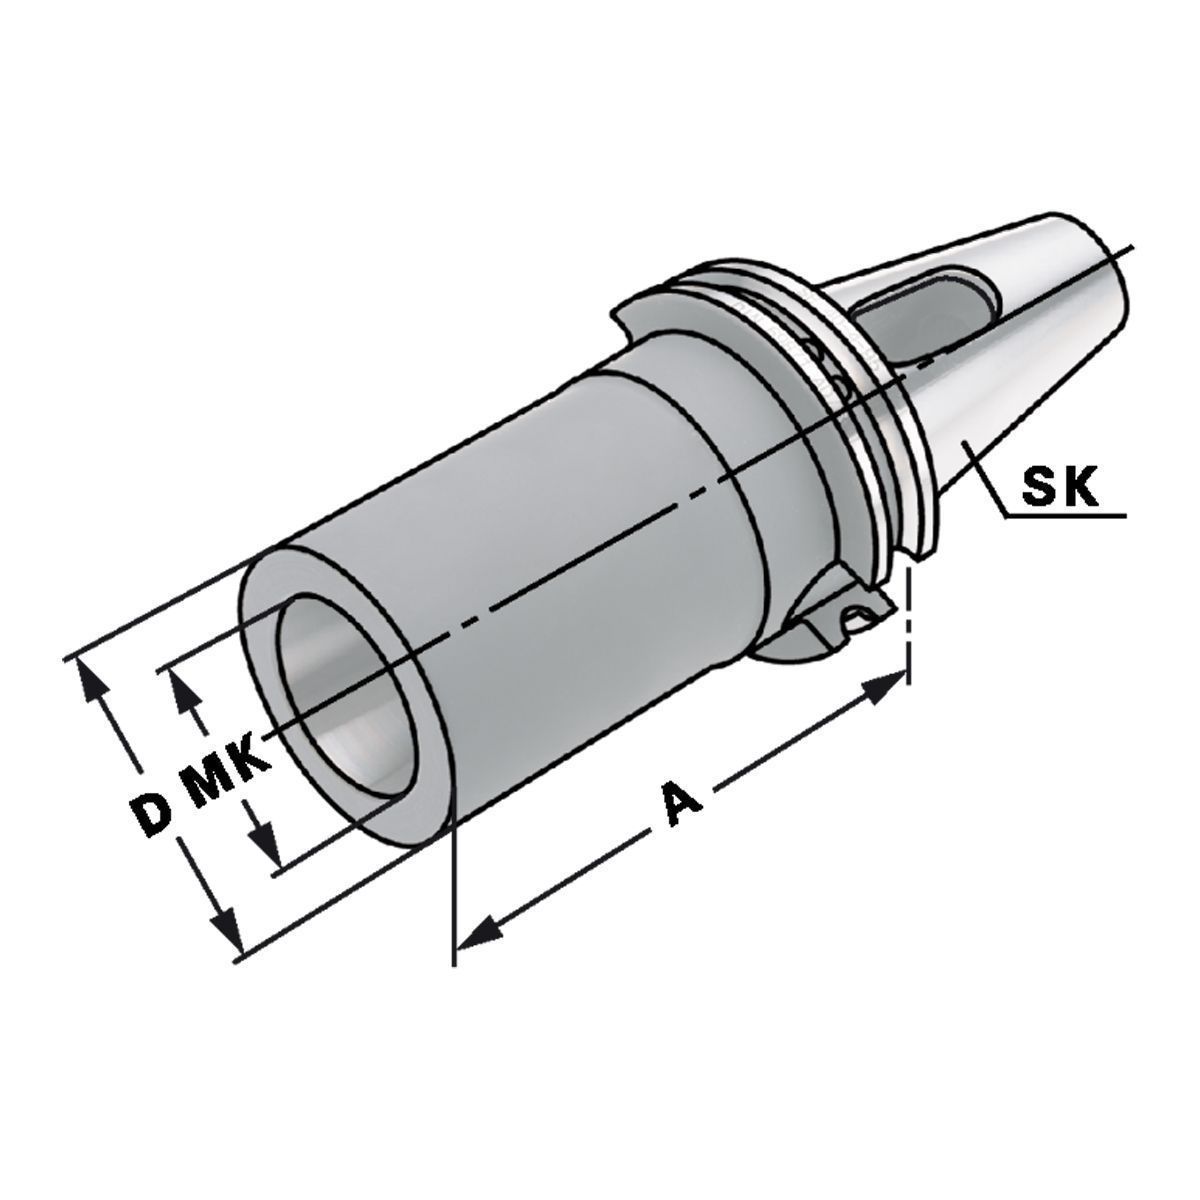 Zwischenhülse SK 50-3-65 für MK mit Austreiblappen DIN 6383